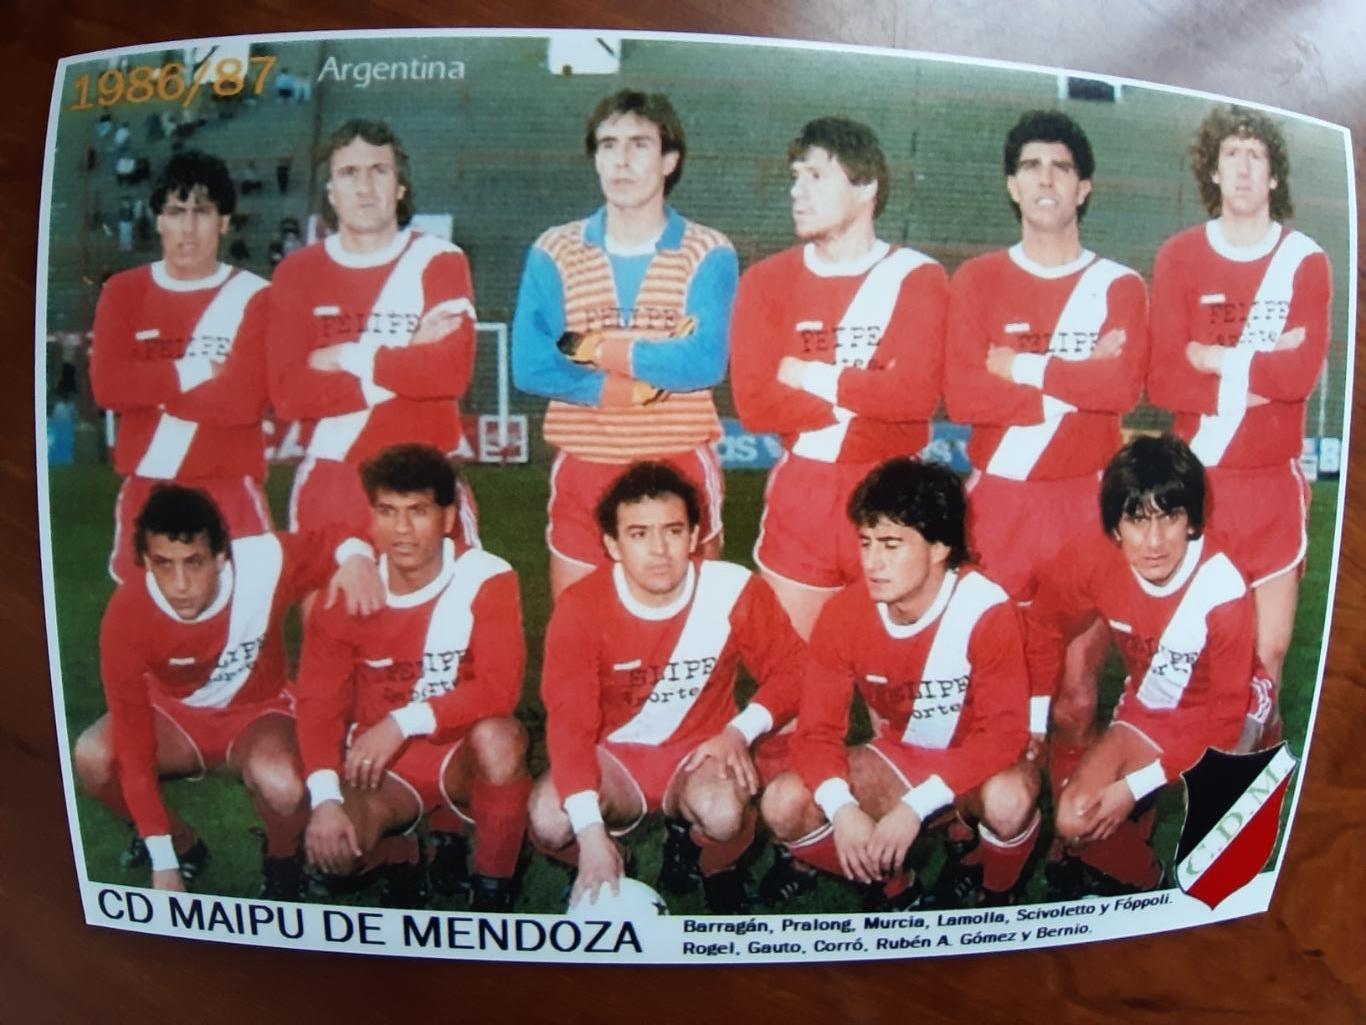 CD MAIPU DE MENDOZA 1986/87 (ARGENTINA)